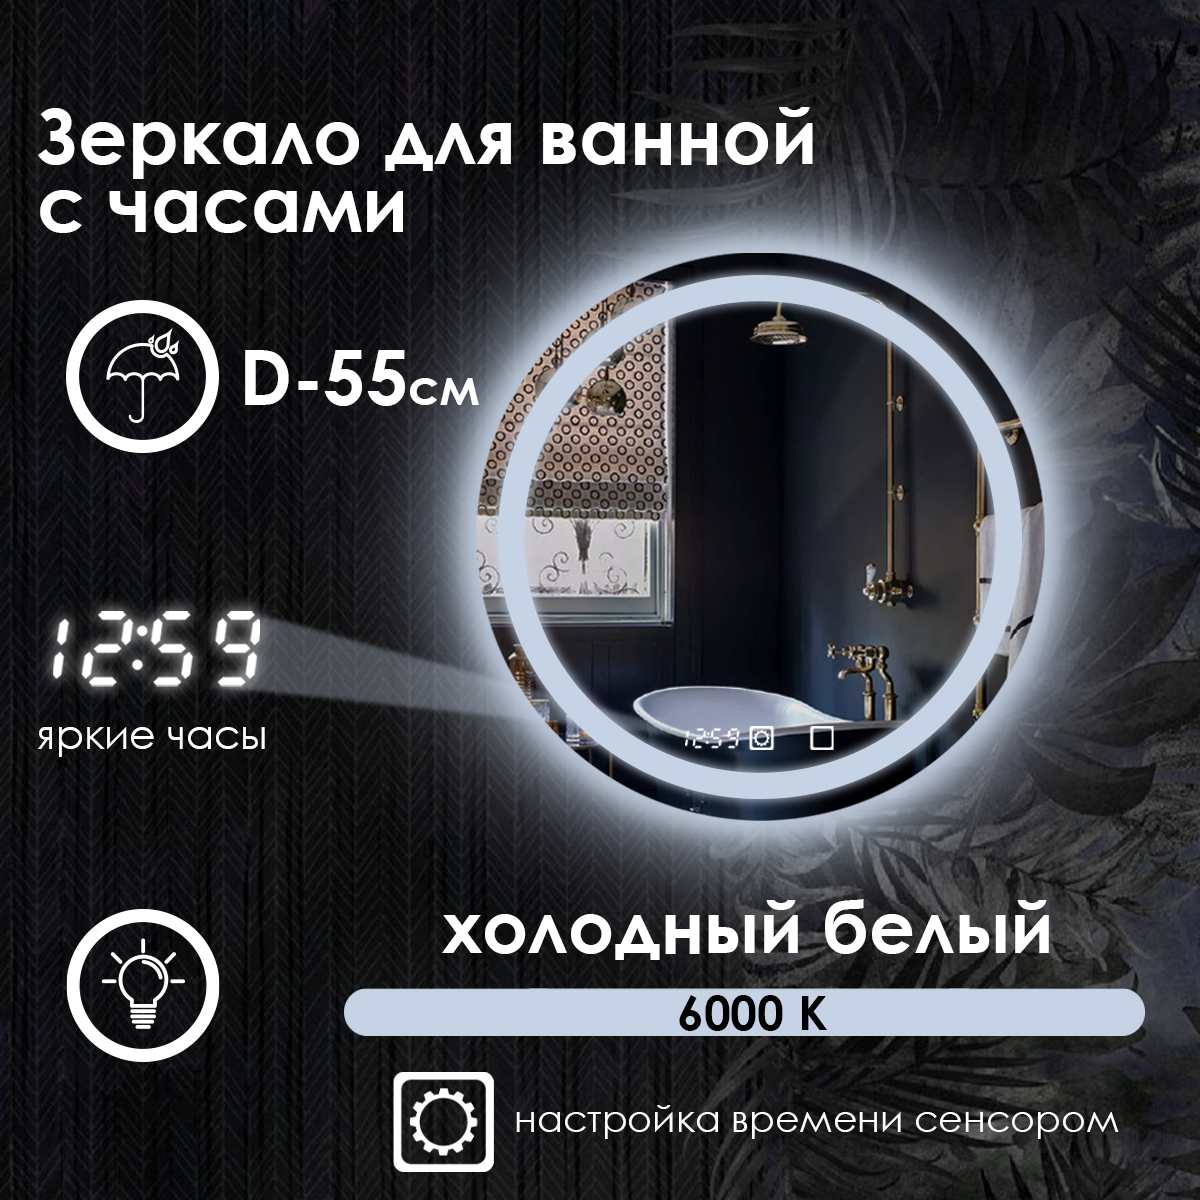 Зеркало настенное Maskota Villanelle для ванной круглое, с фронтальной подсветкой и часами, холодный свет 6000 К, 55 см